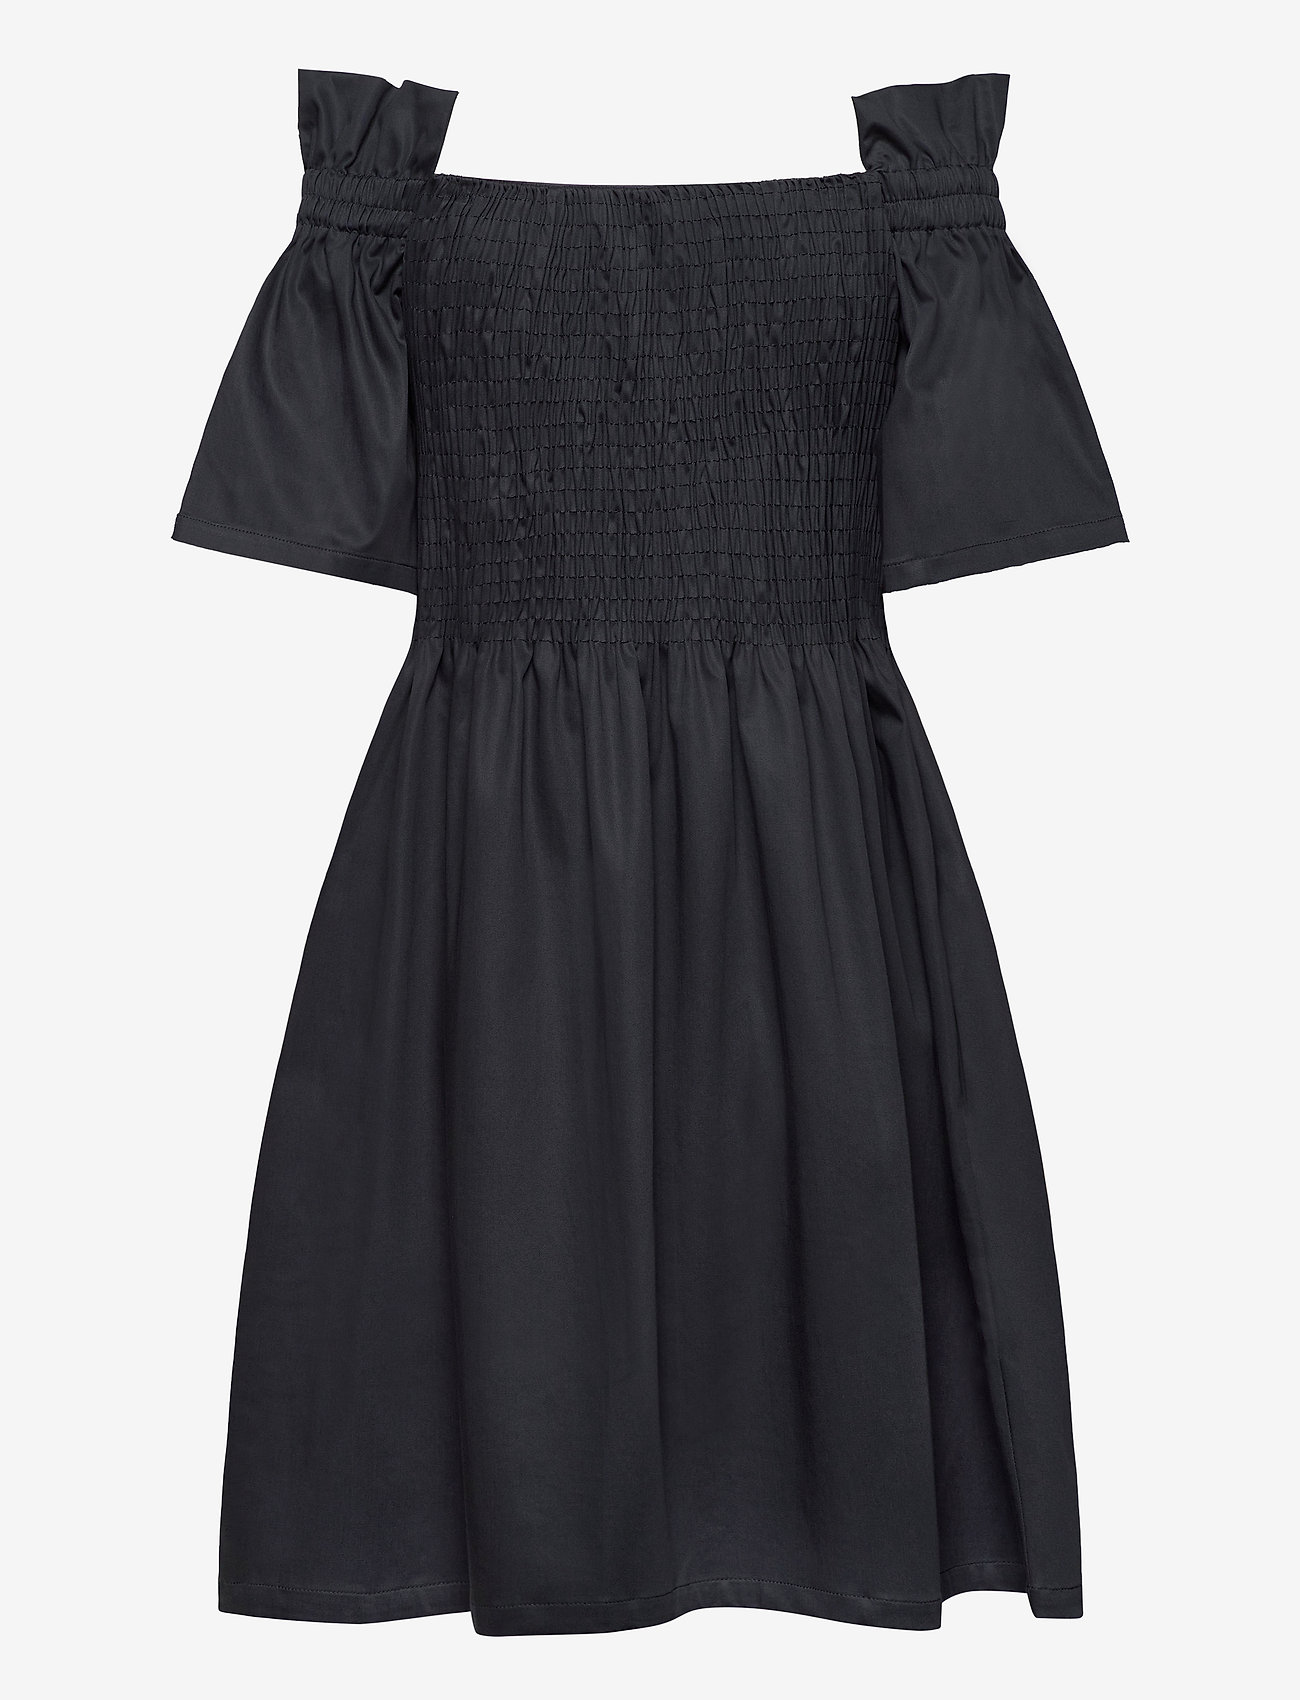 Blanche - Ciola Smock Dress - proginės suknelės - graphite - 1